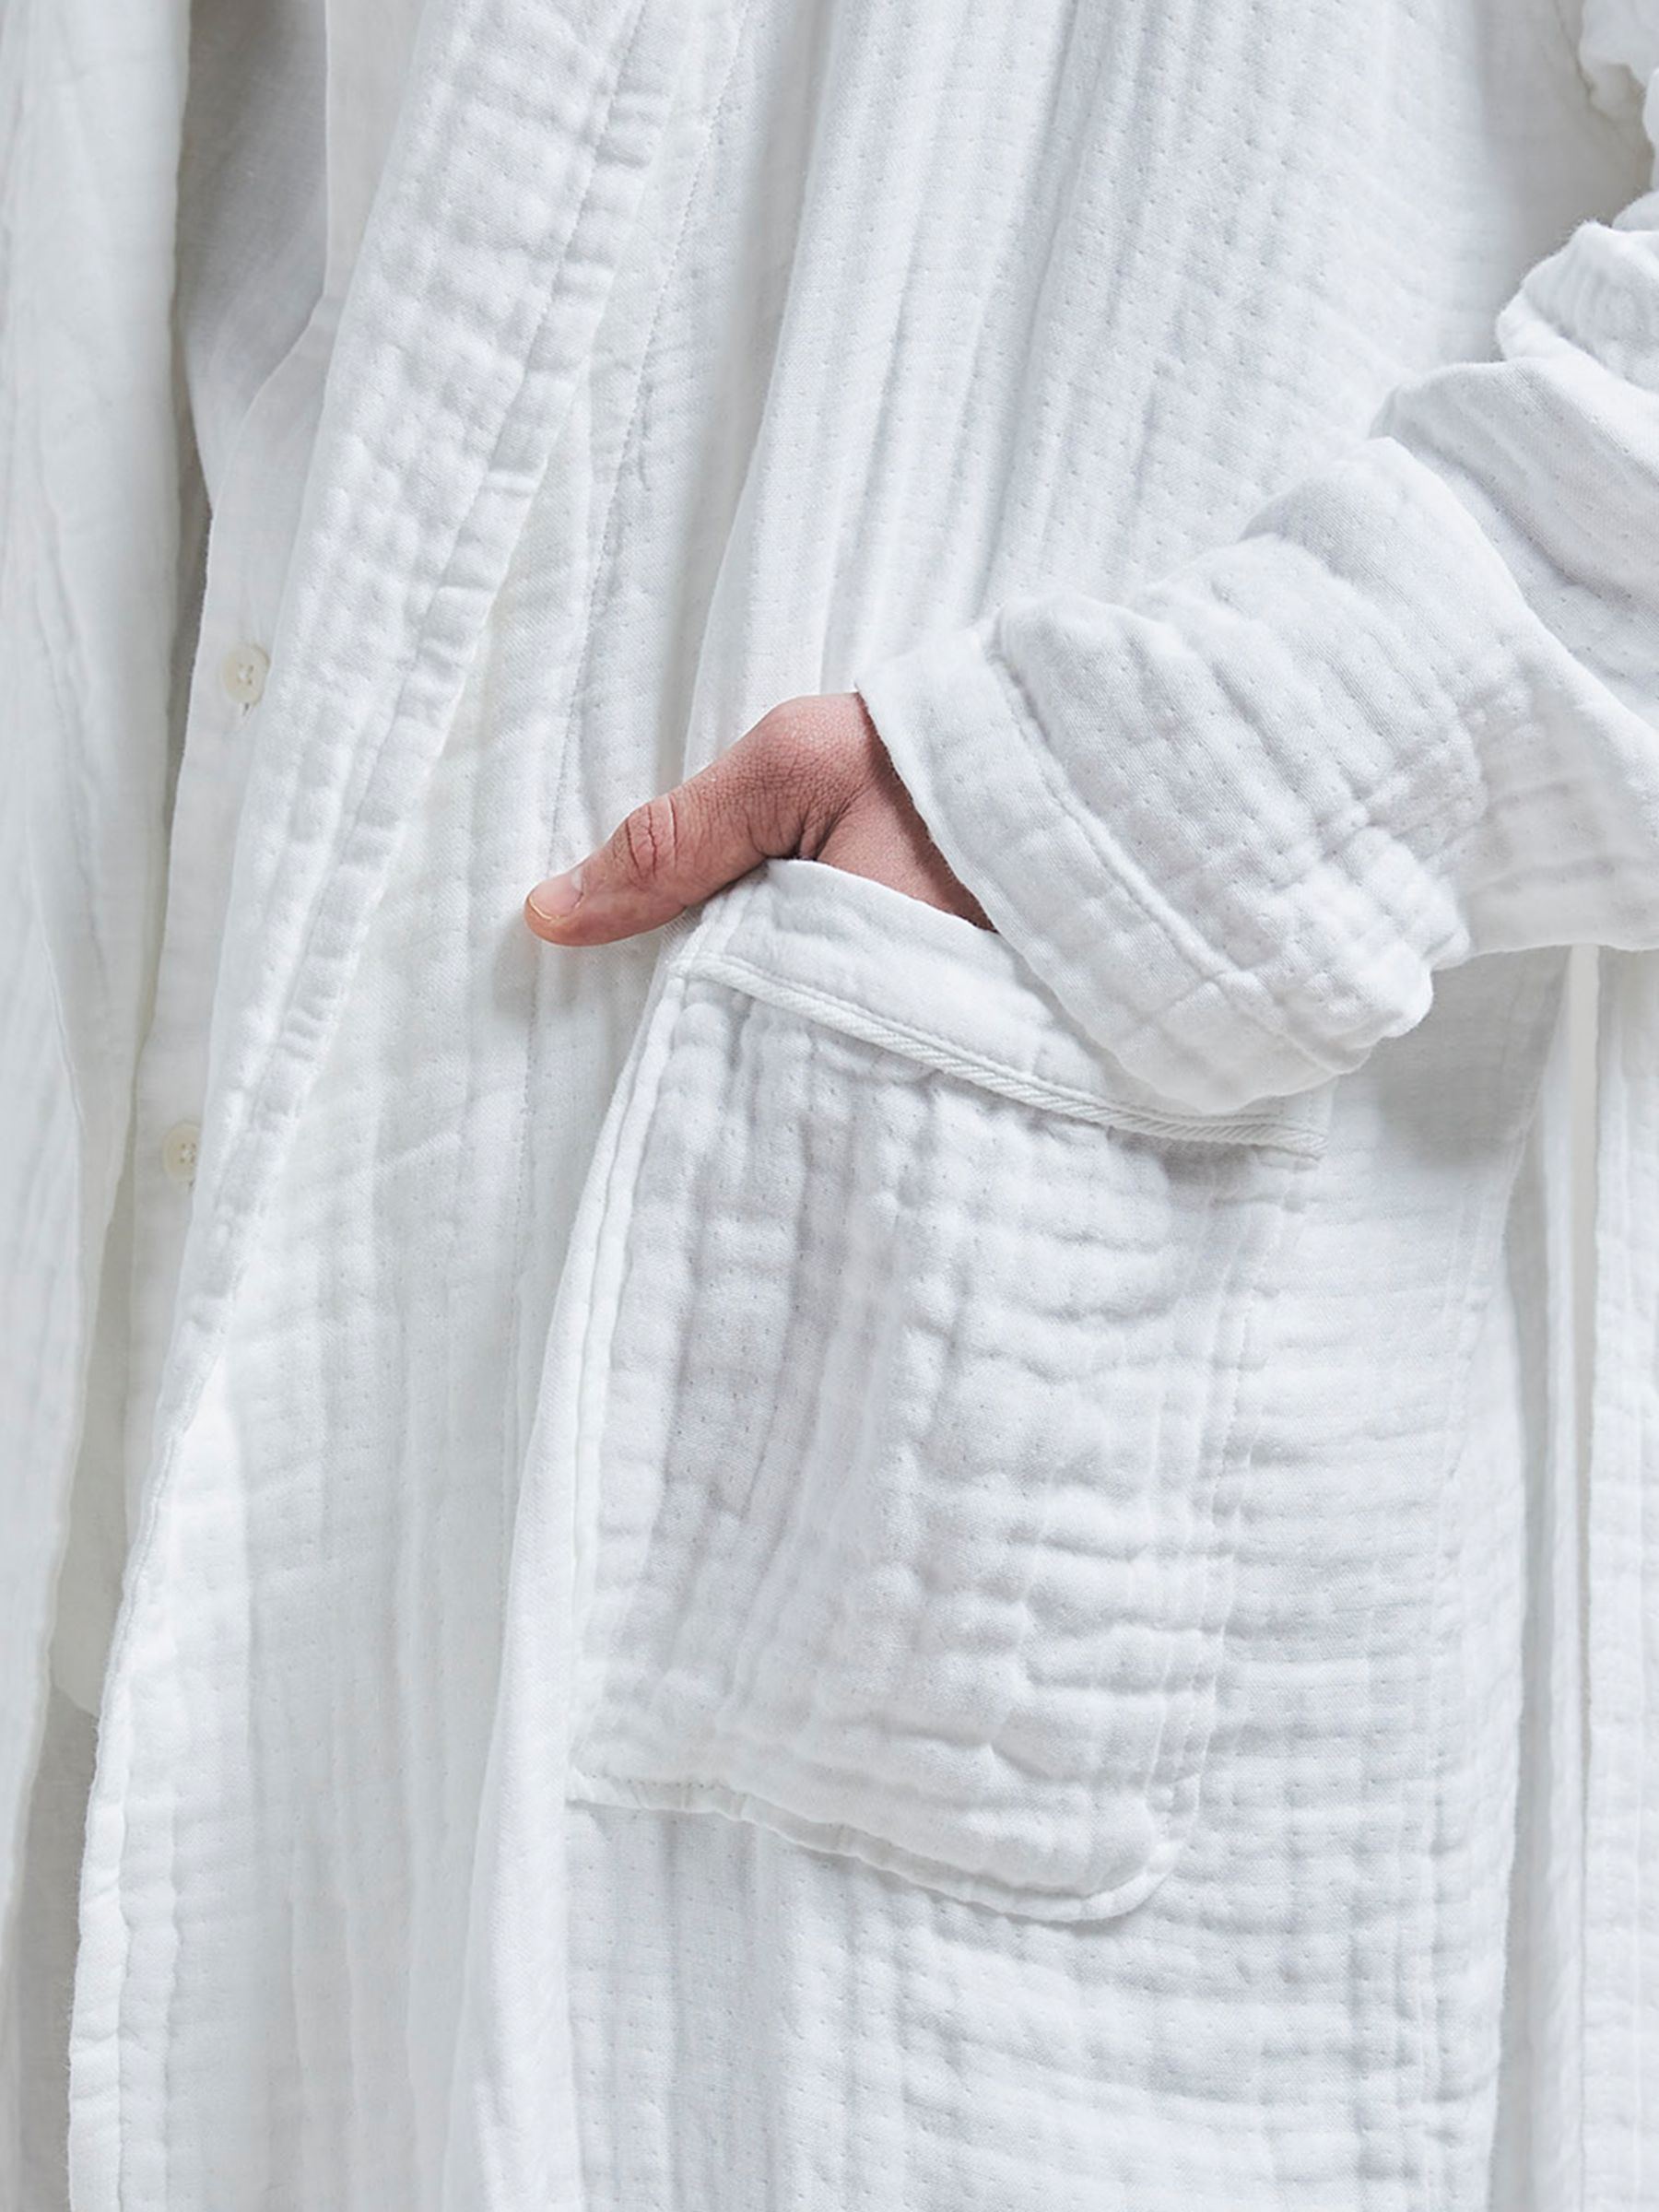 Bedfolk Plush Robe, Snow at John Lewis & Partners